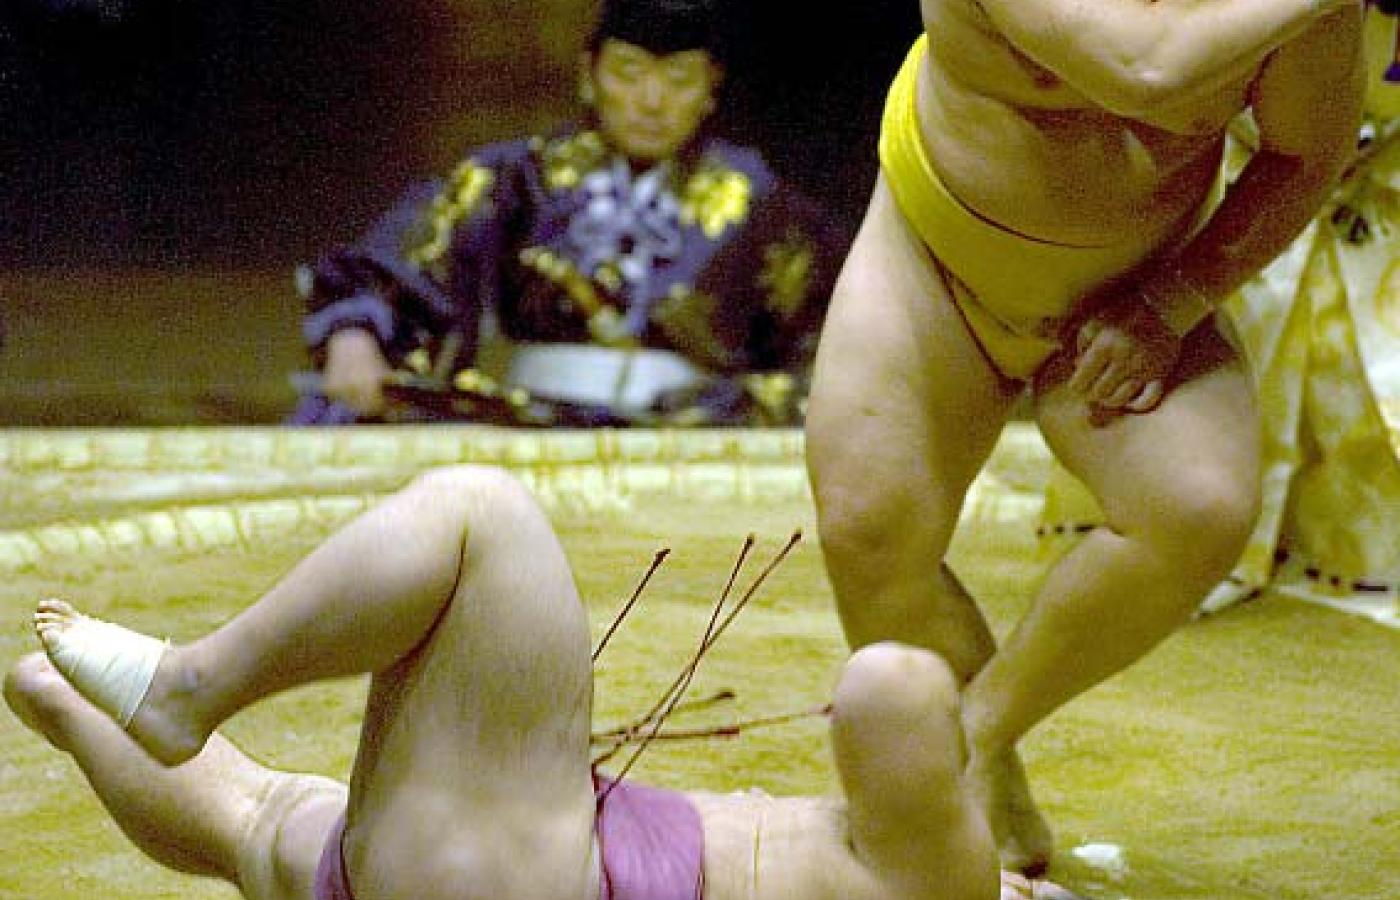 Październik 2005 roku. Mistrz Asashoryu (stoi) wygrywa zawody Grand Sumo Las Vegas. © LARRY BURTON / GAMMA / HACHETTE PHOTOS PRESSE, BE&W